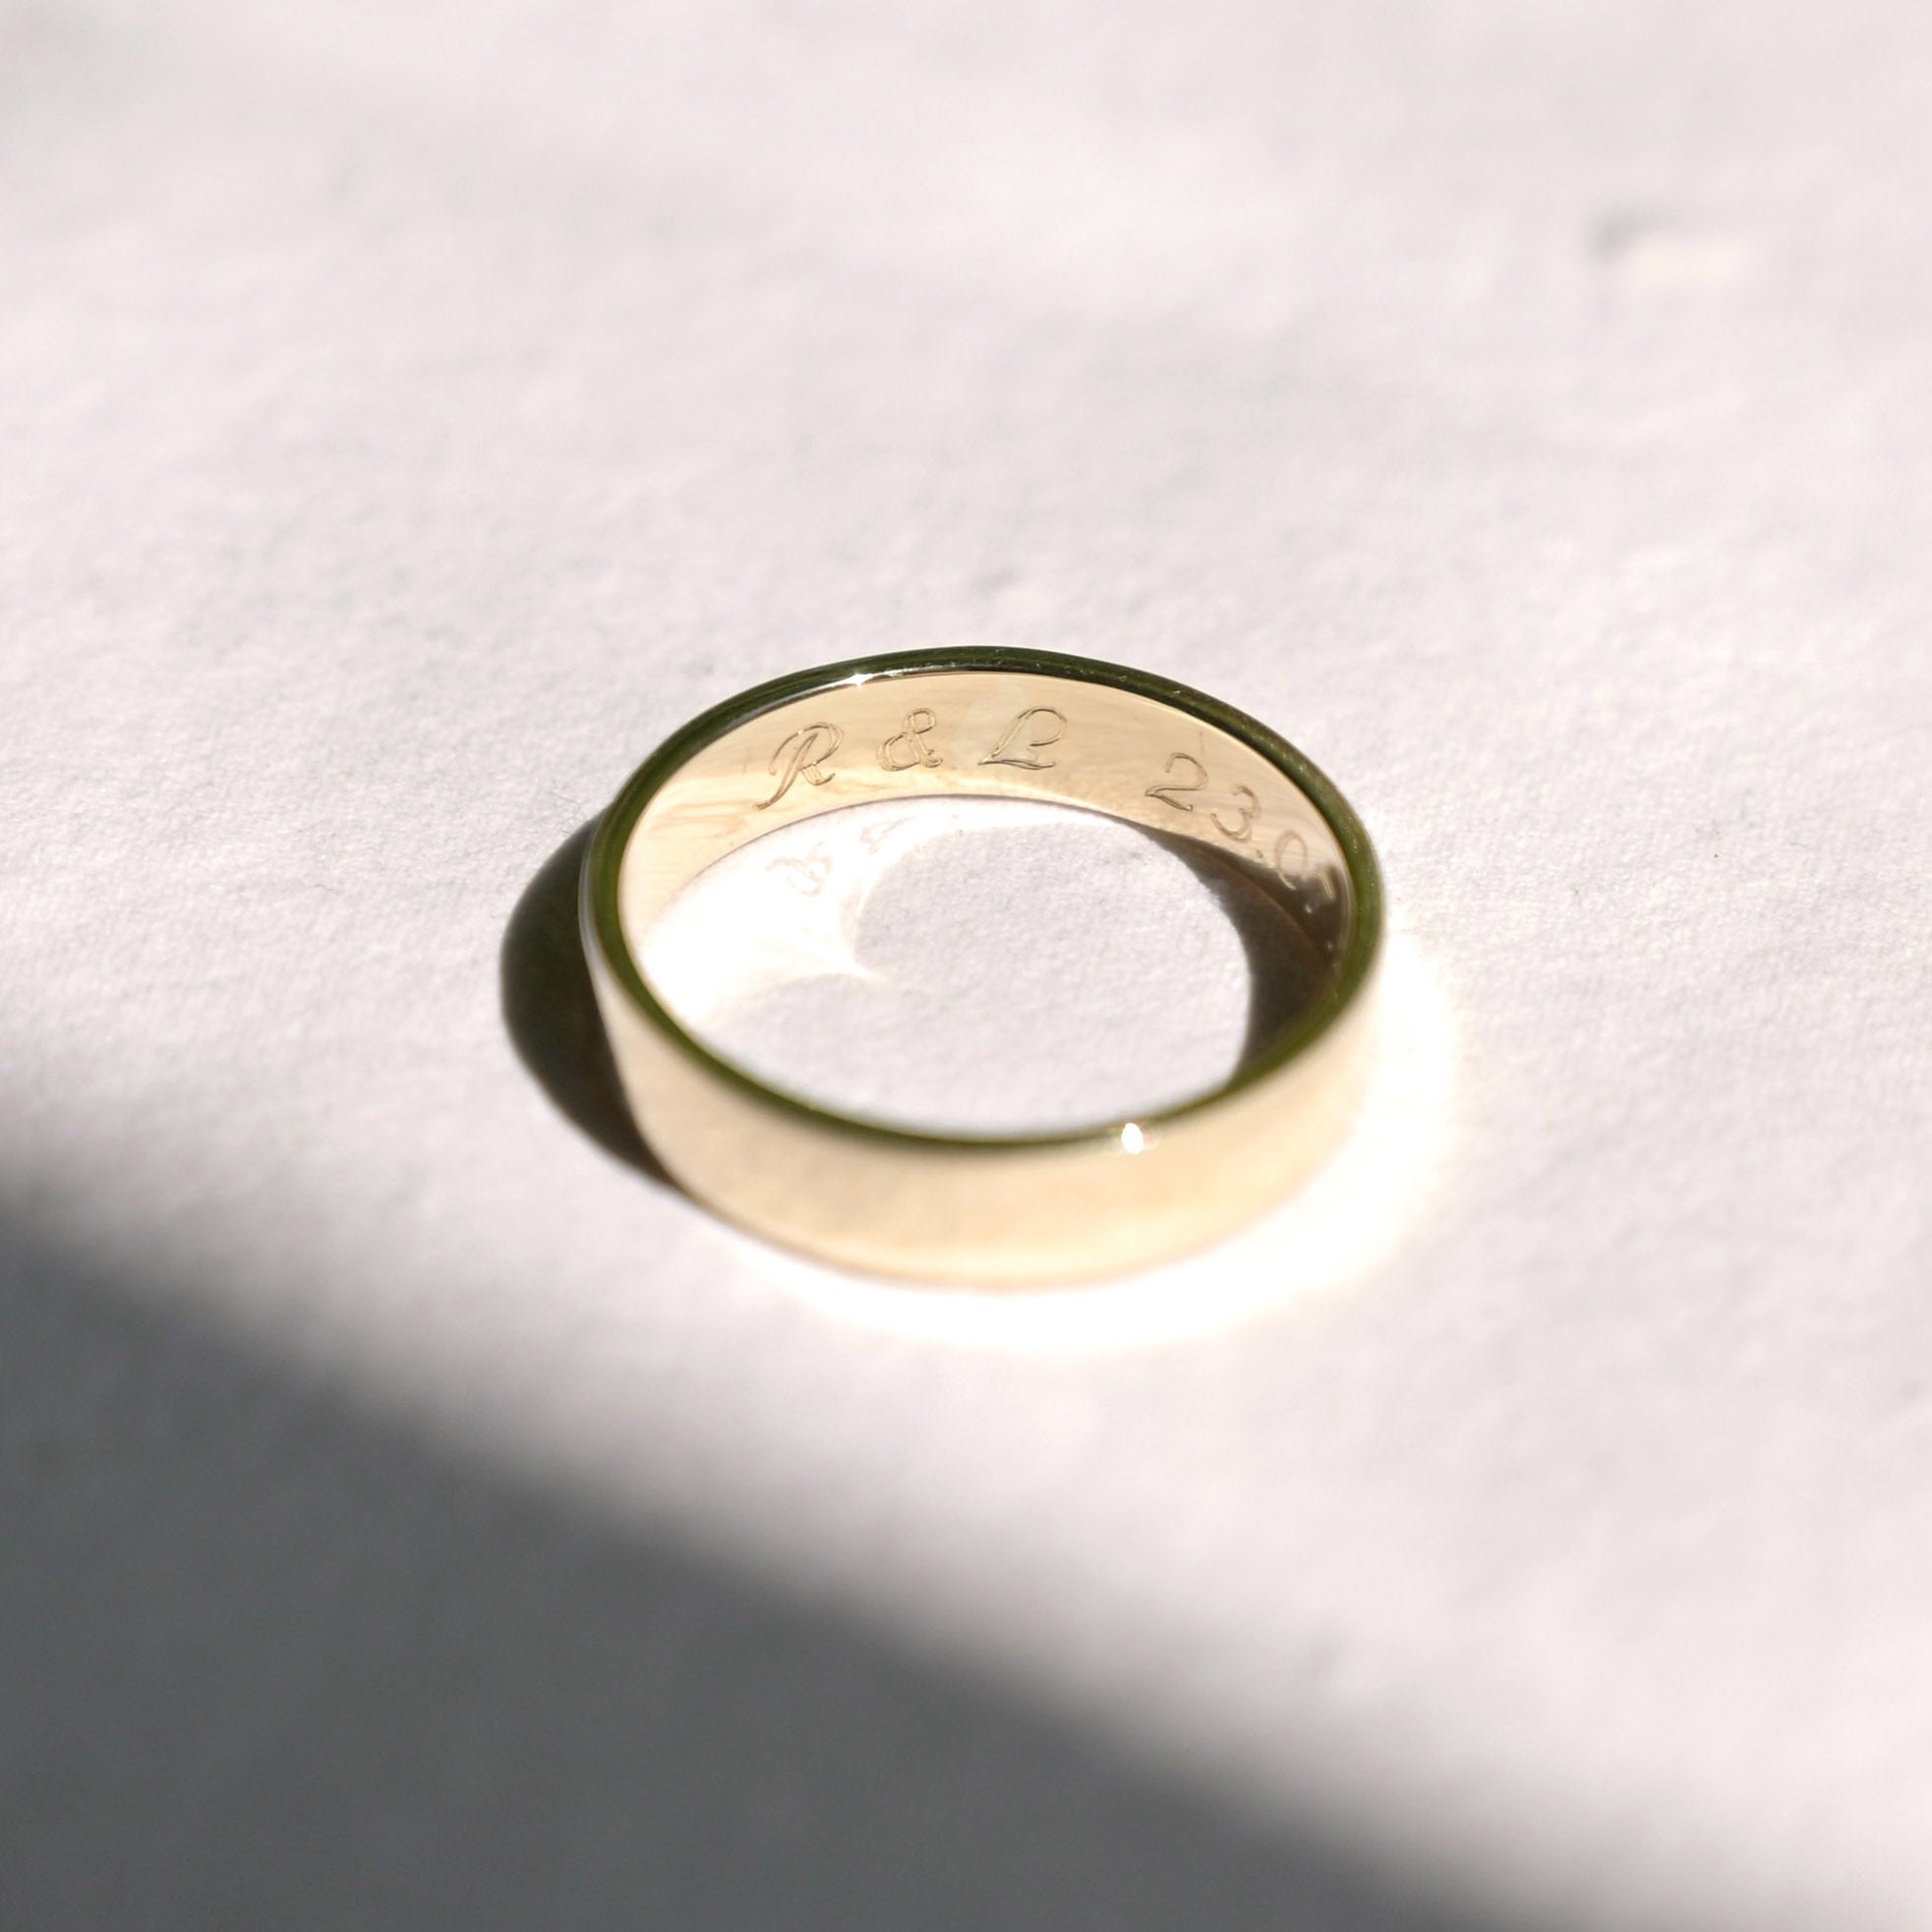 9ct Yellow Gold Medium Wedding Ring